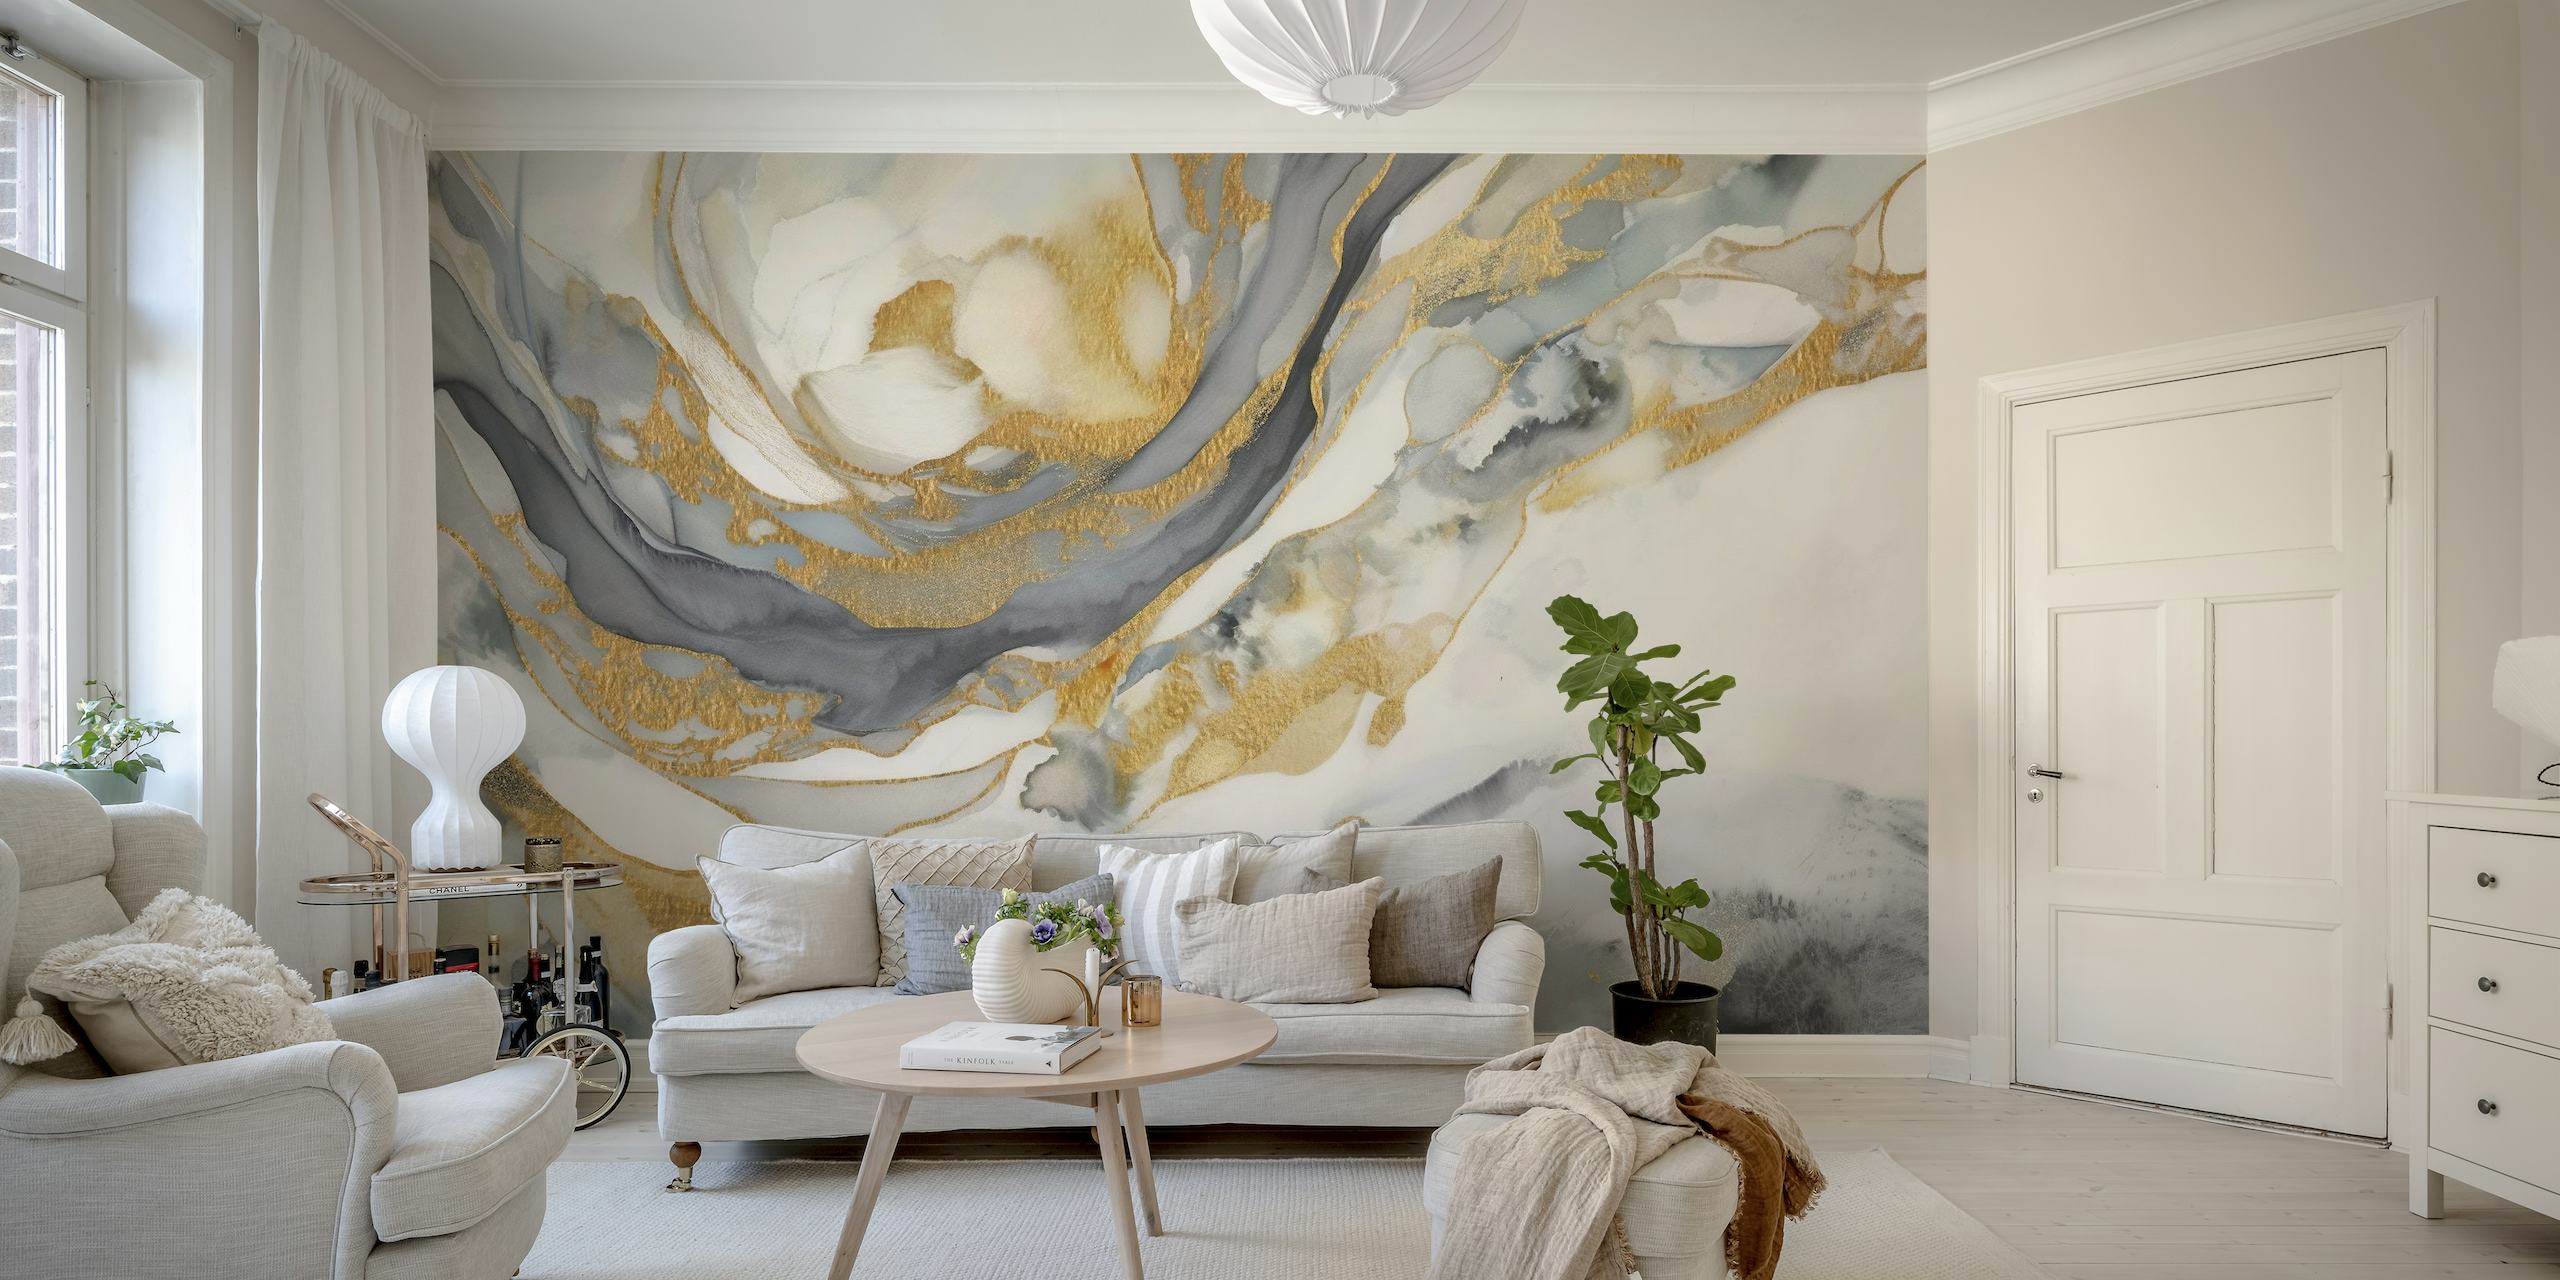 Abstraktes Wandbild mit wirbelnden goldenen, grauen und weißen Marmormustern